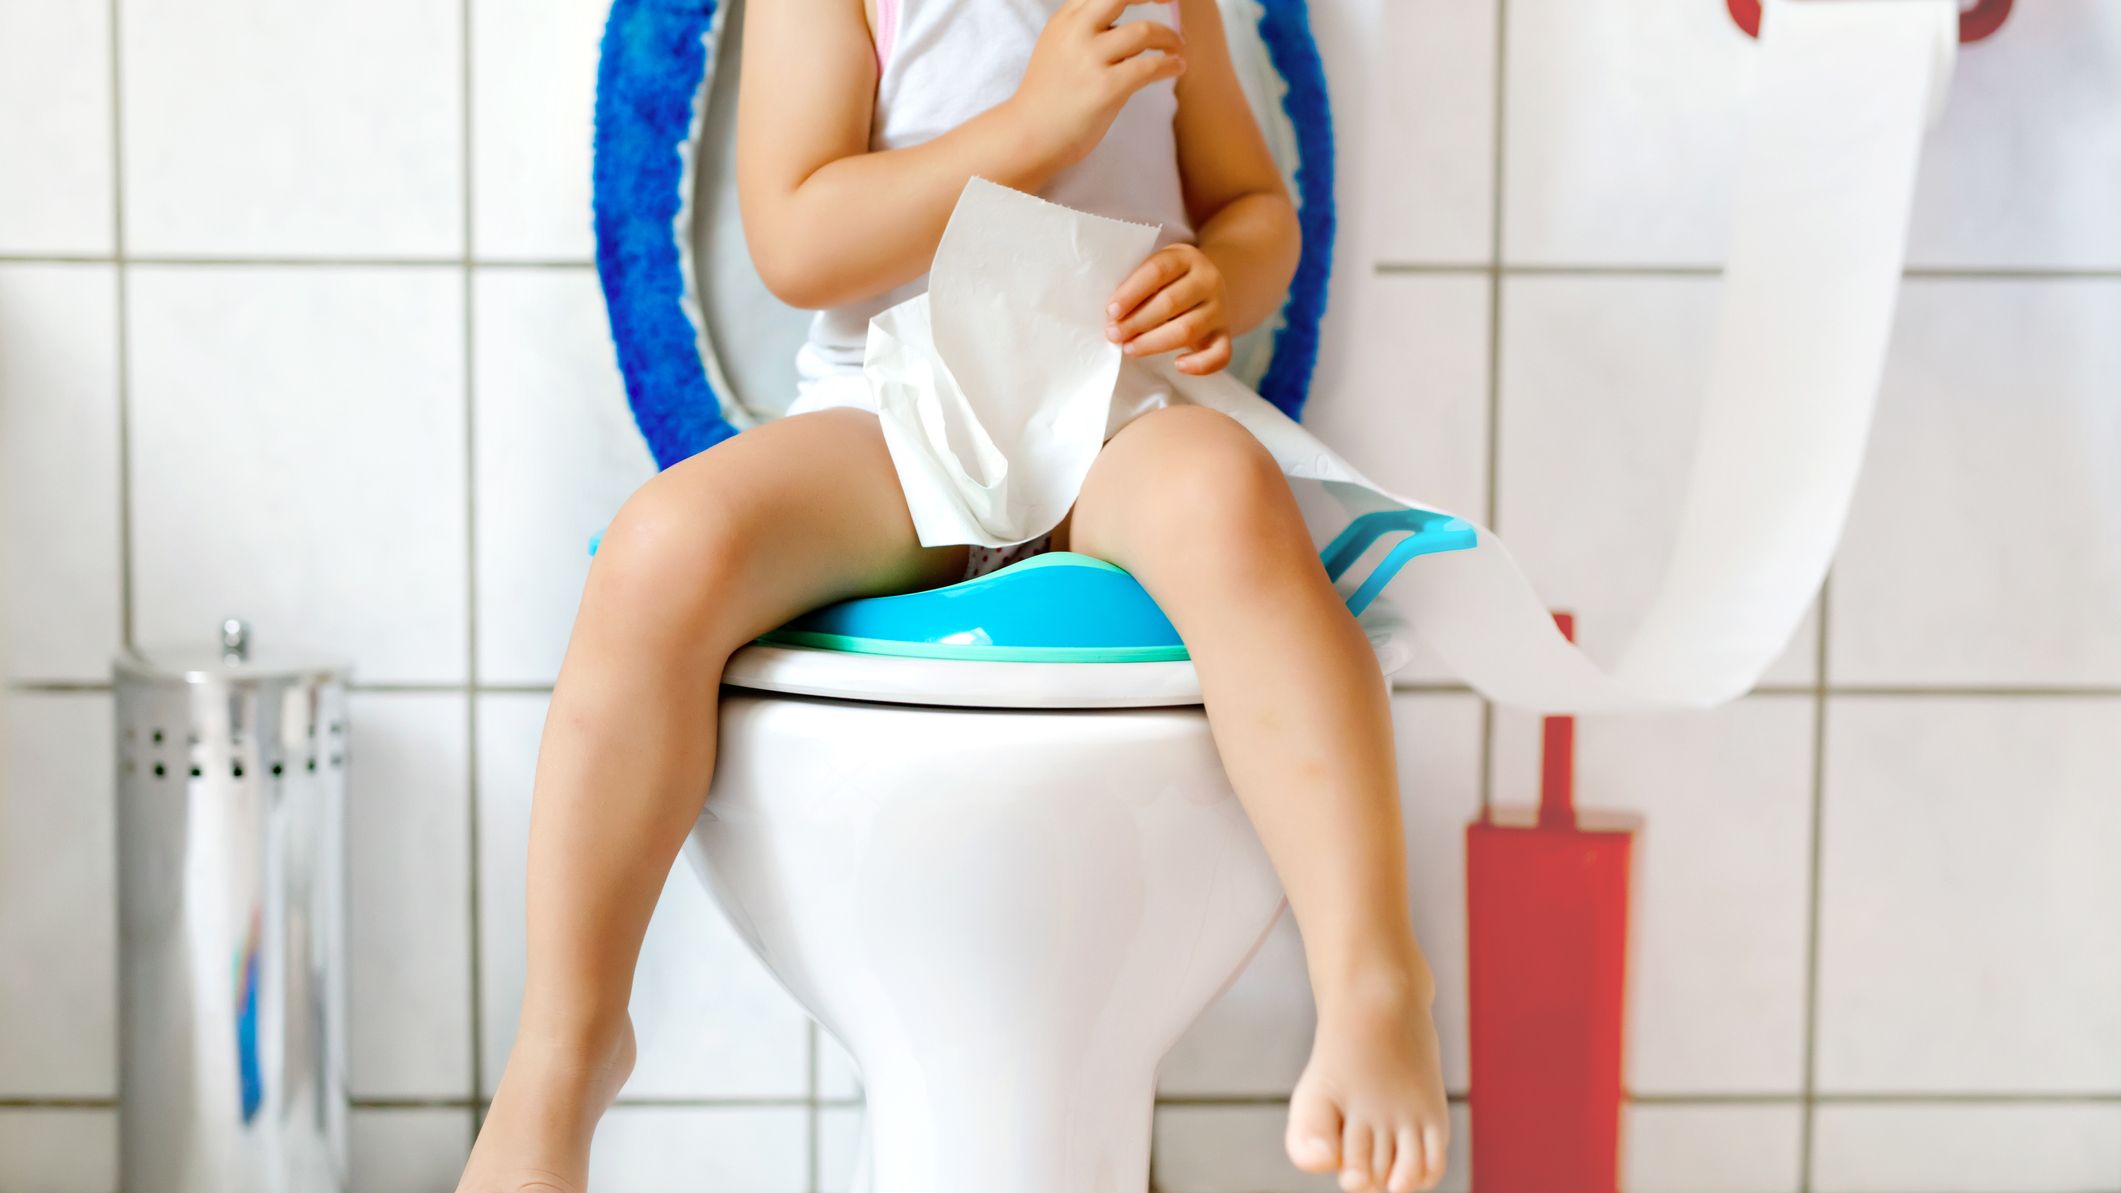 Le réducteur de toilettes : quels avantages ?, Autour de bébé